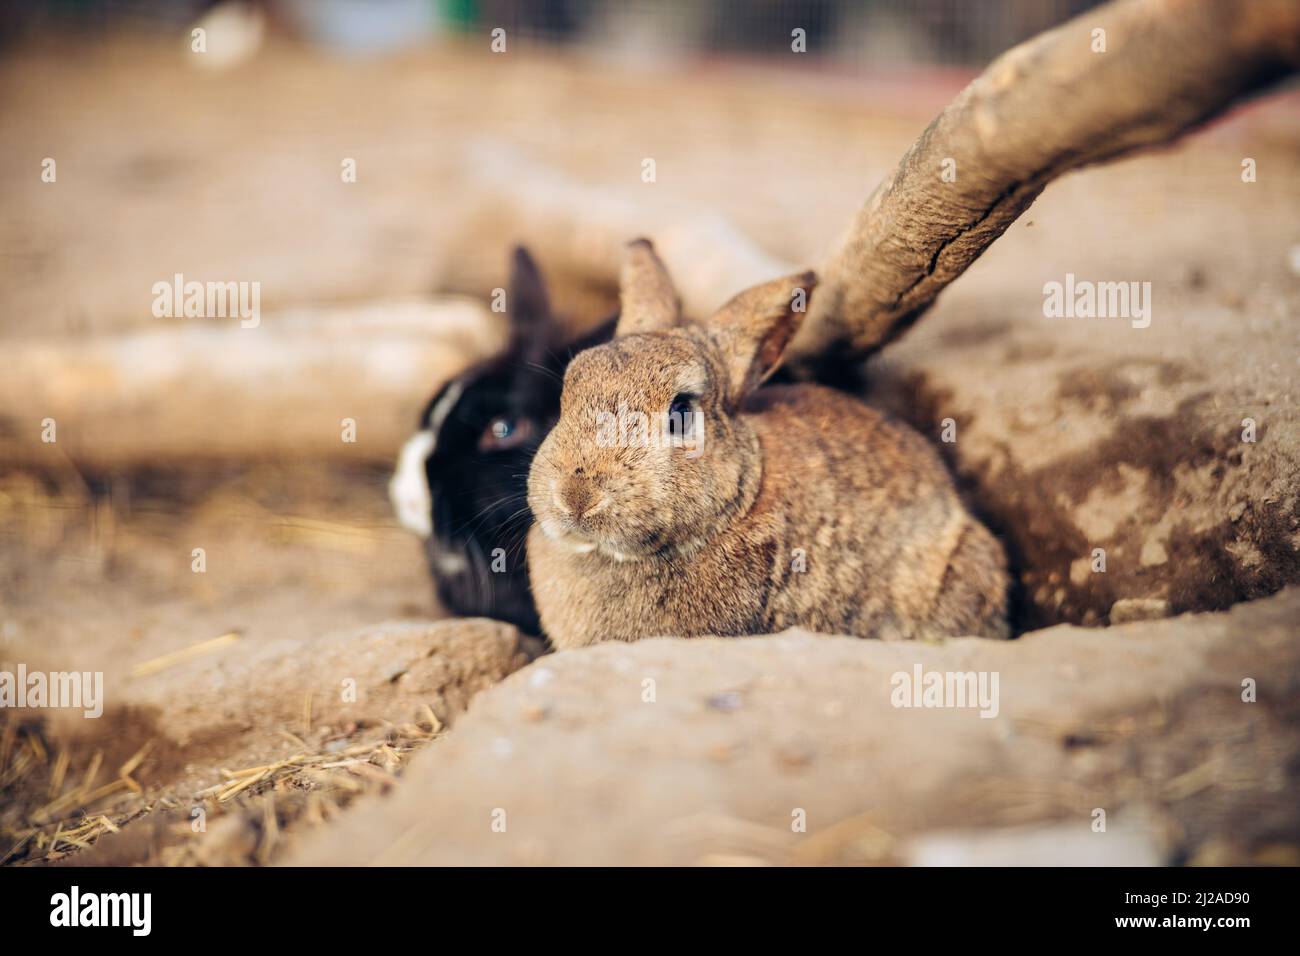 Entzückendes braunes Kaninchen steht auf dem Boden. Teenager Brown Bunny sitzt zwischen Löchern im Boden. Hochwertige Fotos Stockfoto